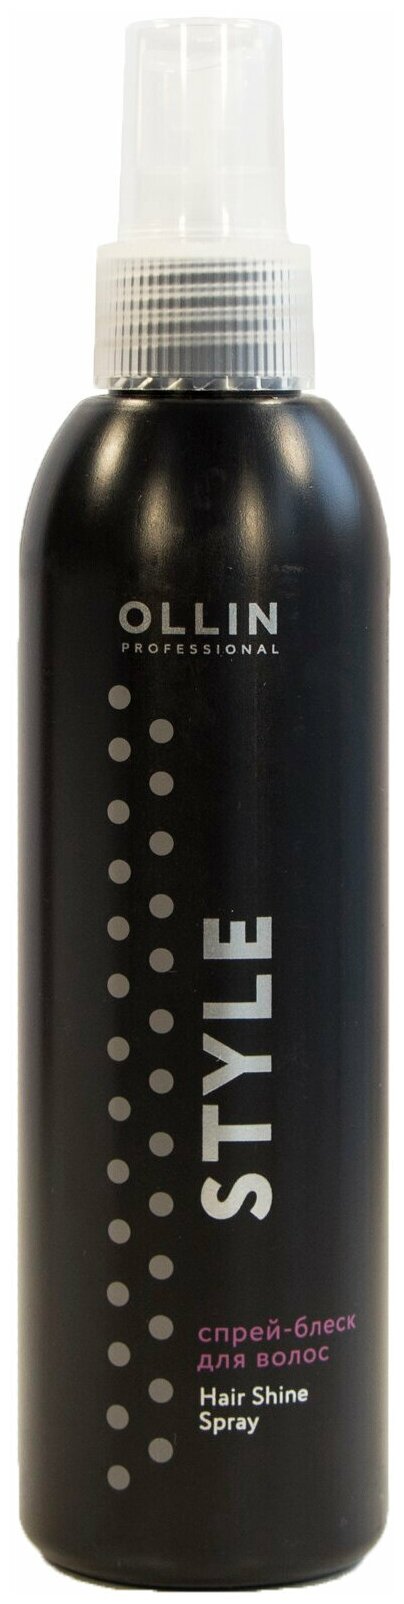 Ollin Professional Спрей-блеск для волос Hair Shine Spray 200 мл (Ollin Professional, ) - фото №1